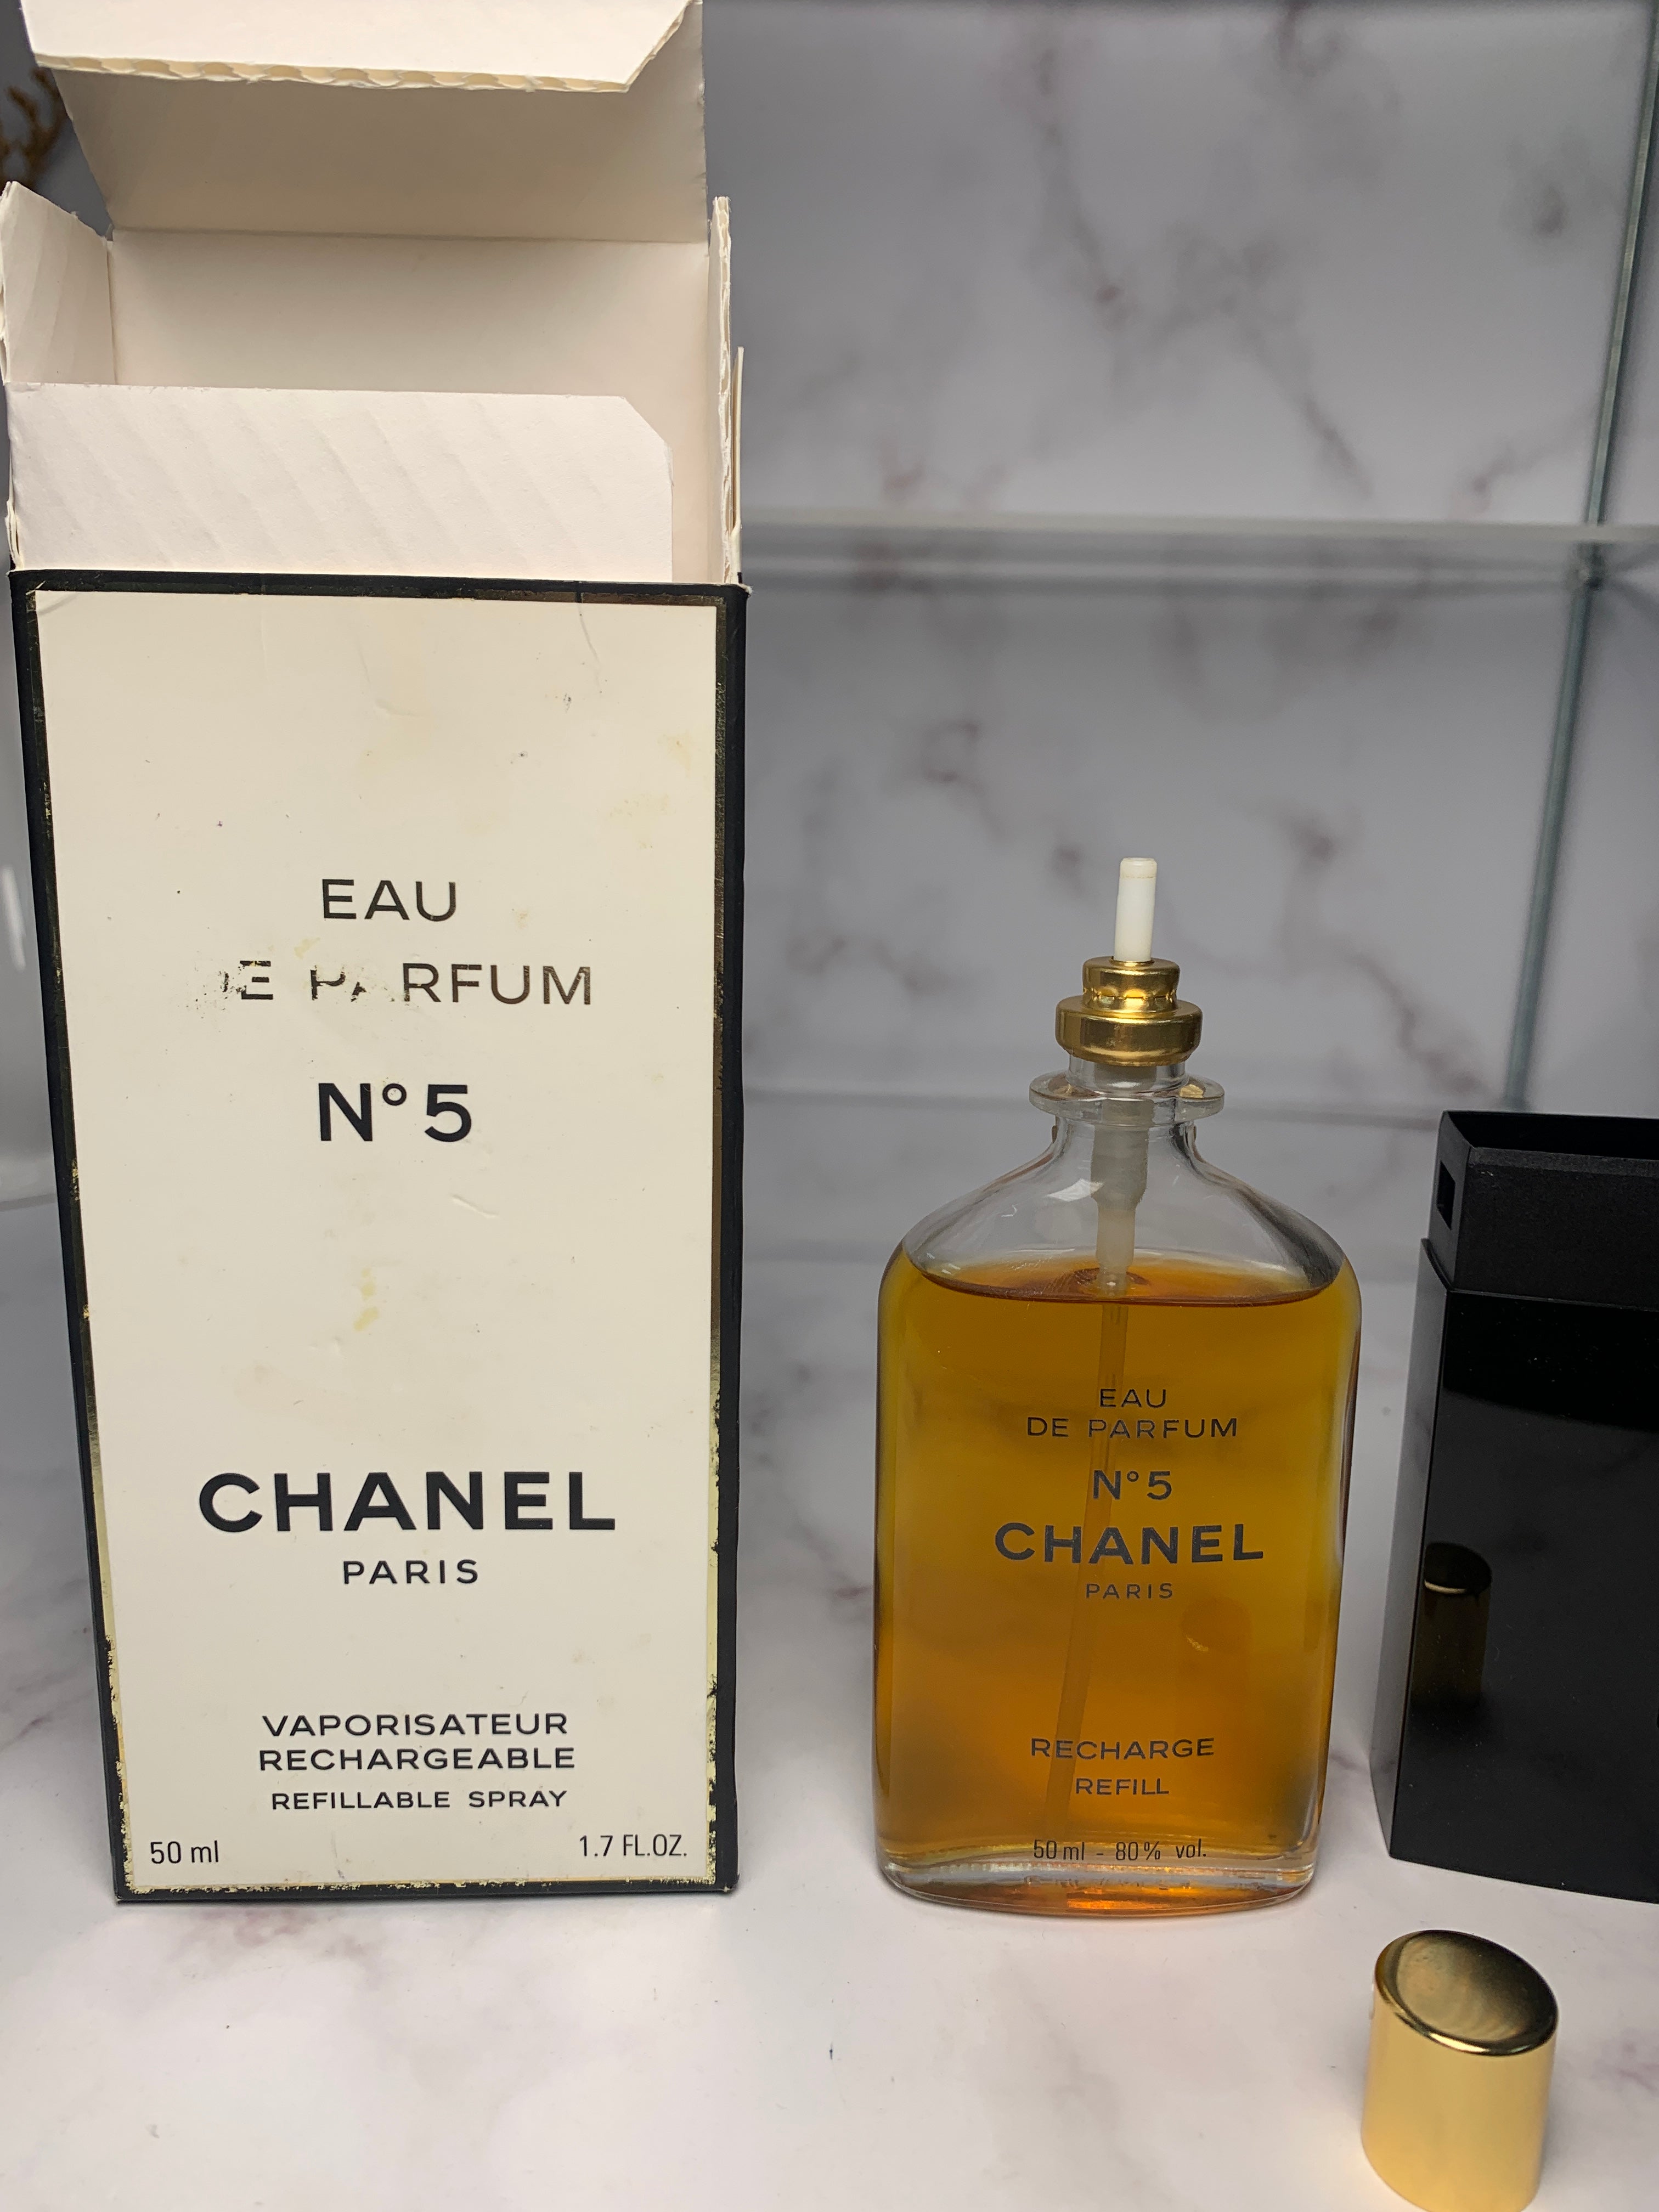 Chanel No. 5 Eau Première Eau de Parfum 50ml